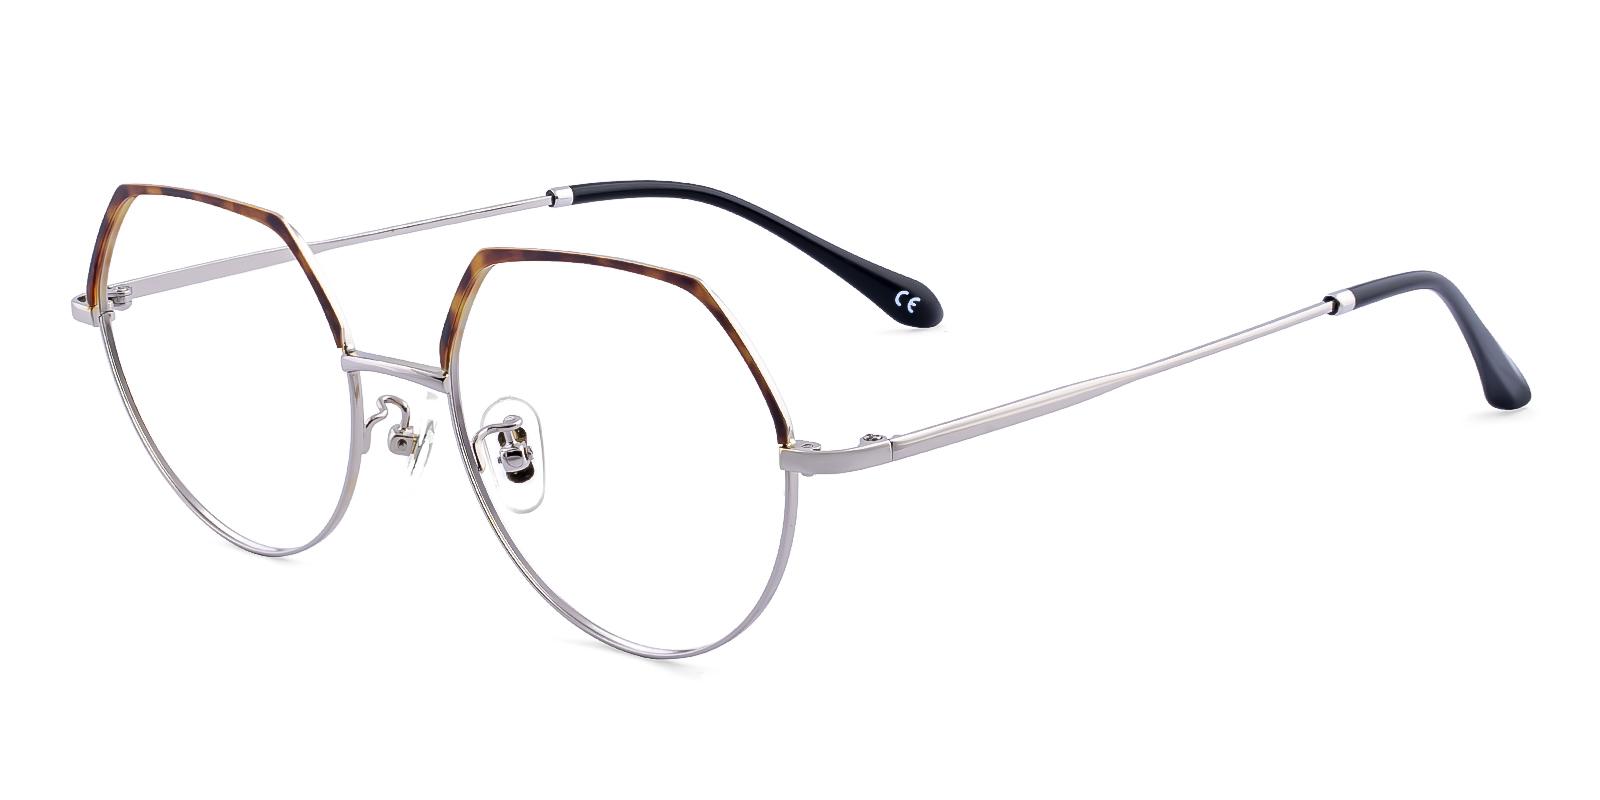 Actie Tortoise Metal Eyeglasses , NosePads Frames from ABBE Glasses